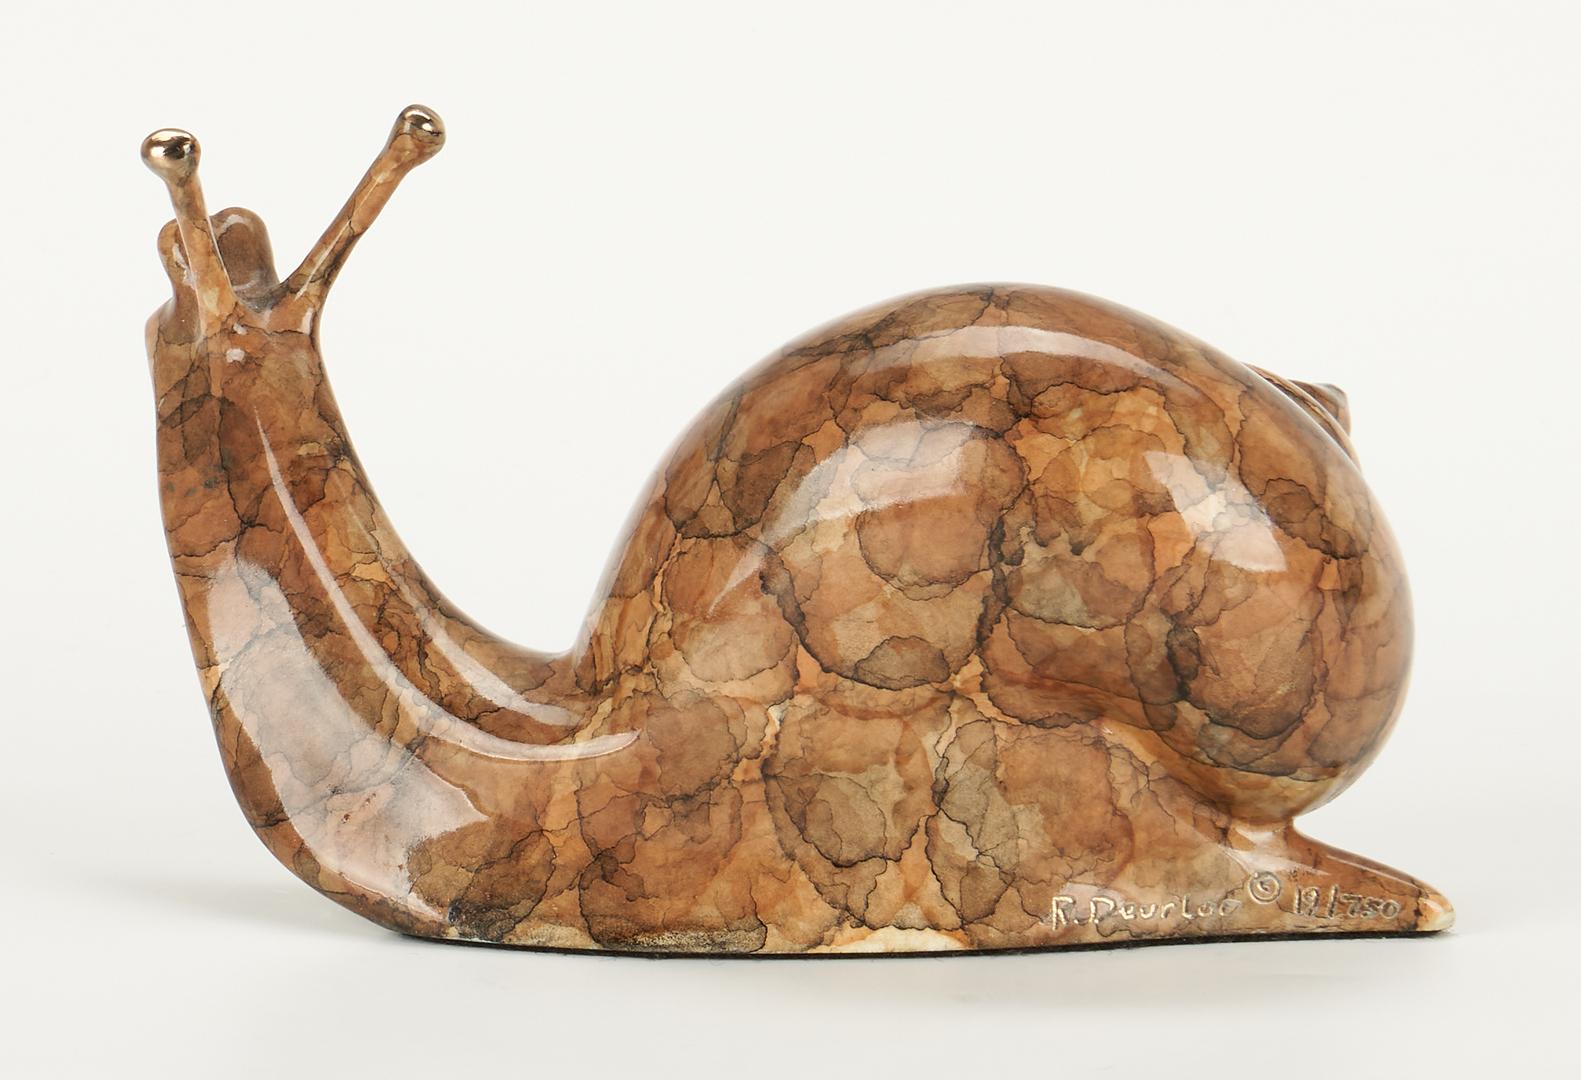 2 Robert Deurloo Bronze Sculptures, Bison and Snail - Image 11 of 16